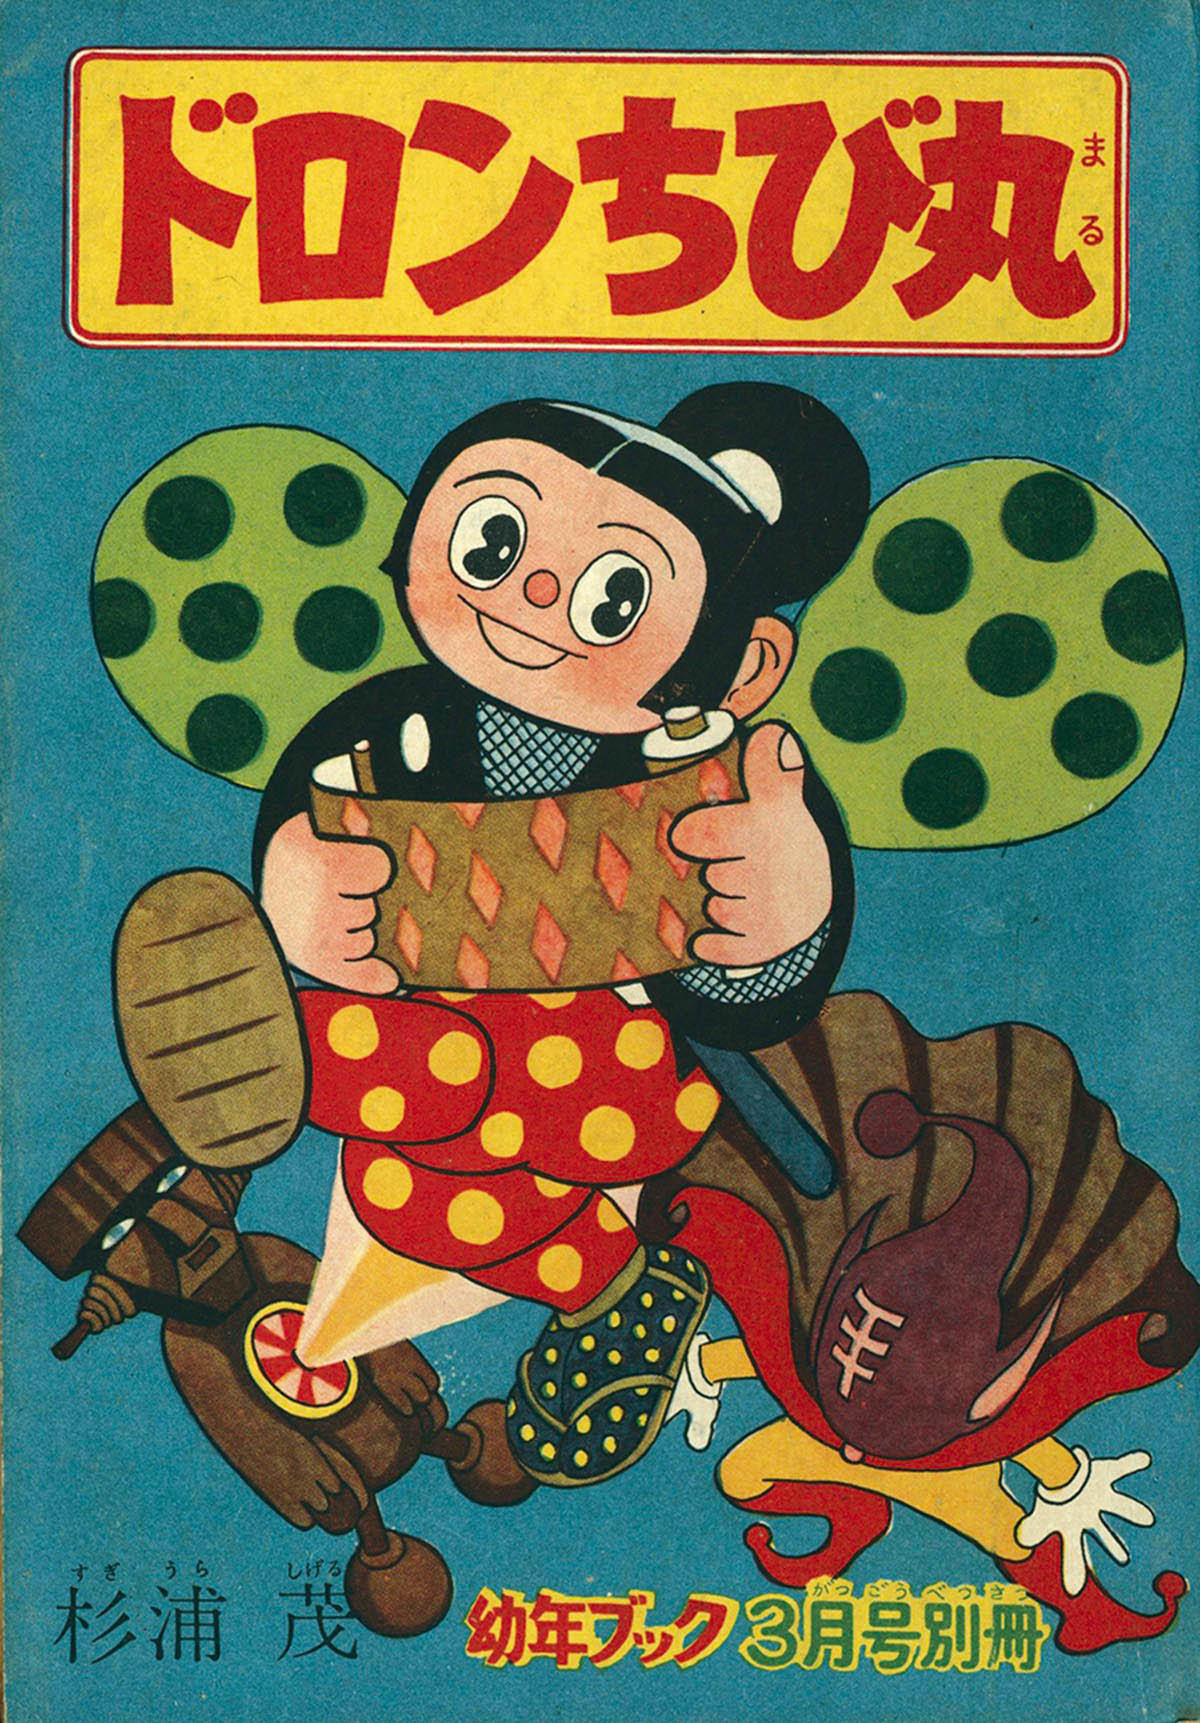 8004] 杉浦茂「ドロンちび丸」 1956(S31)03